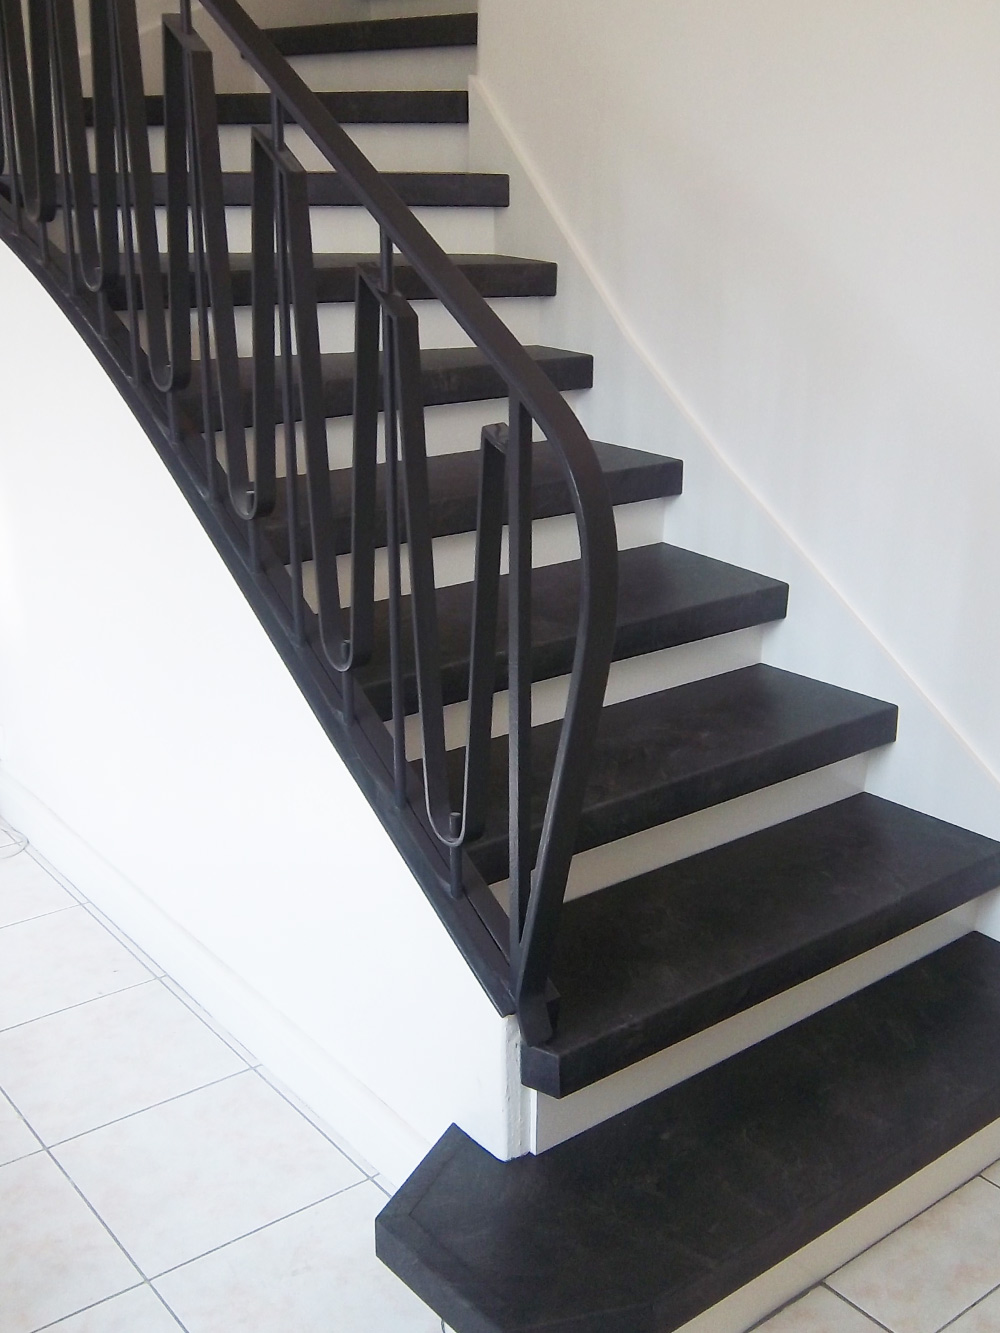 Renowacja schodów z antracytowym laminatem - dalej